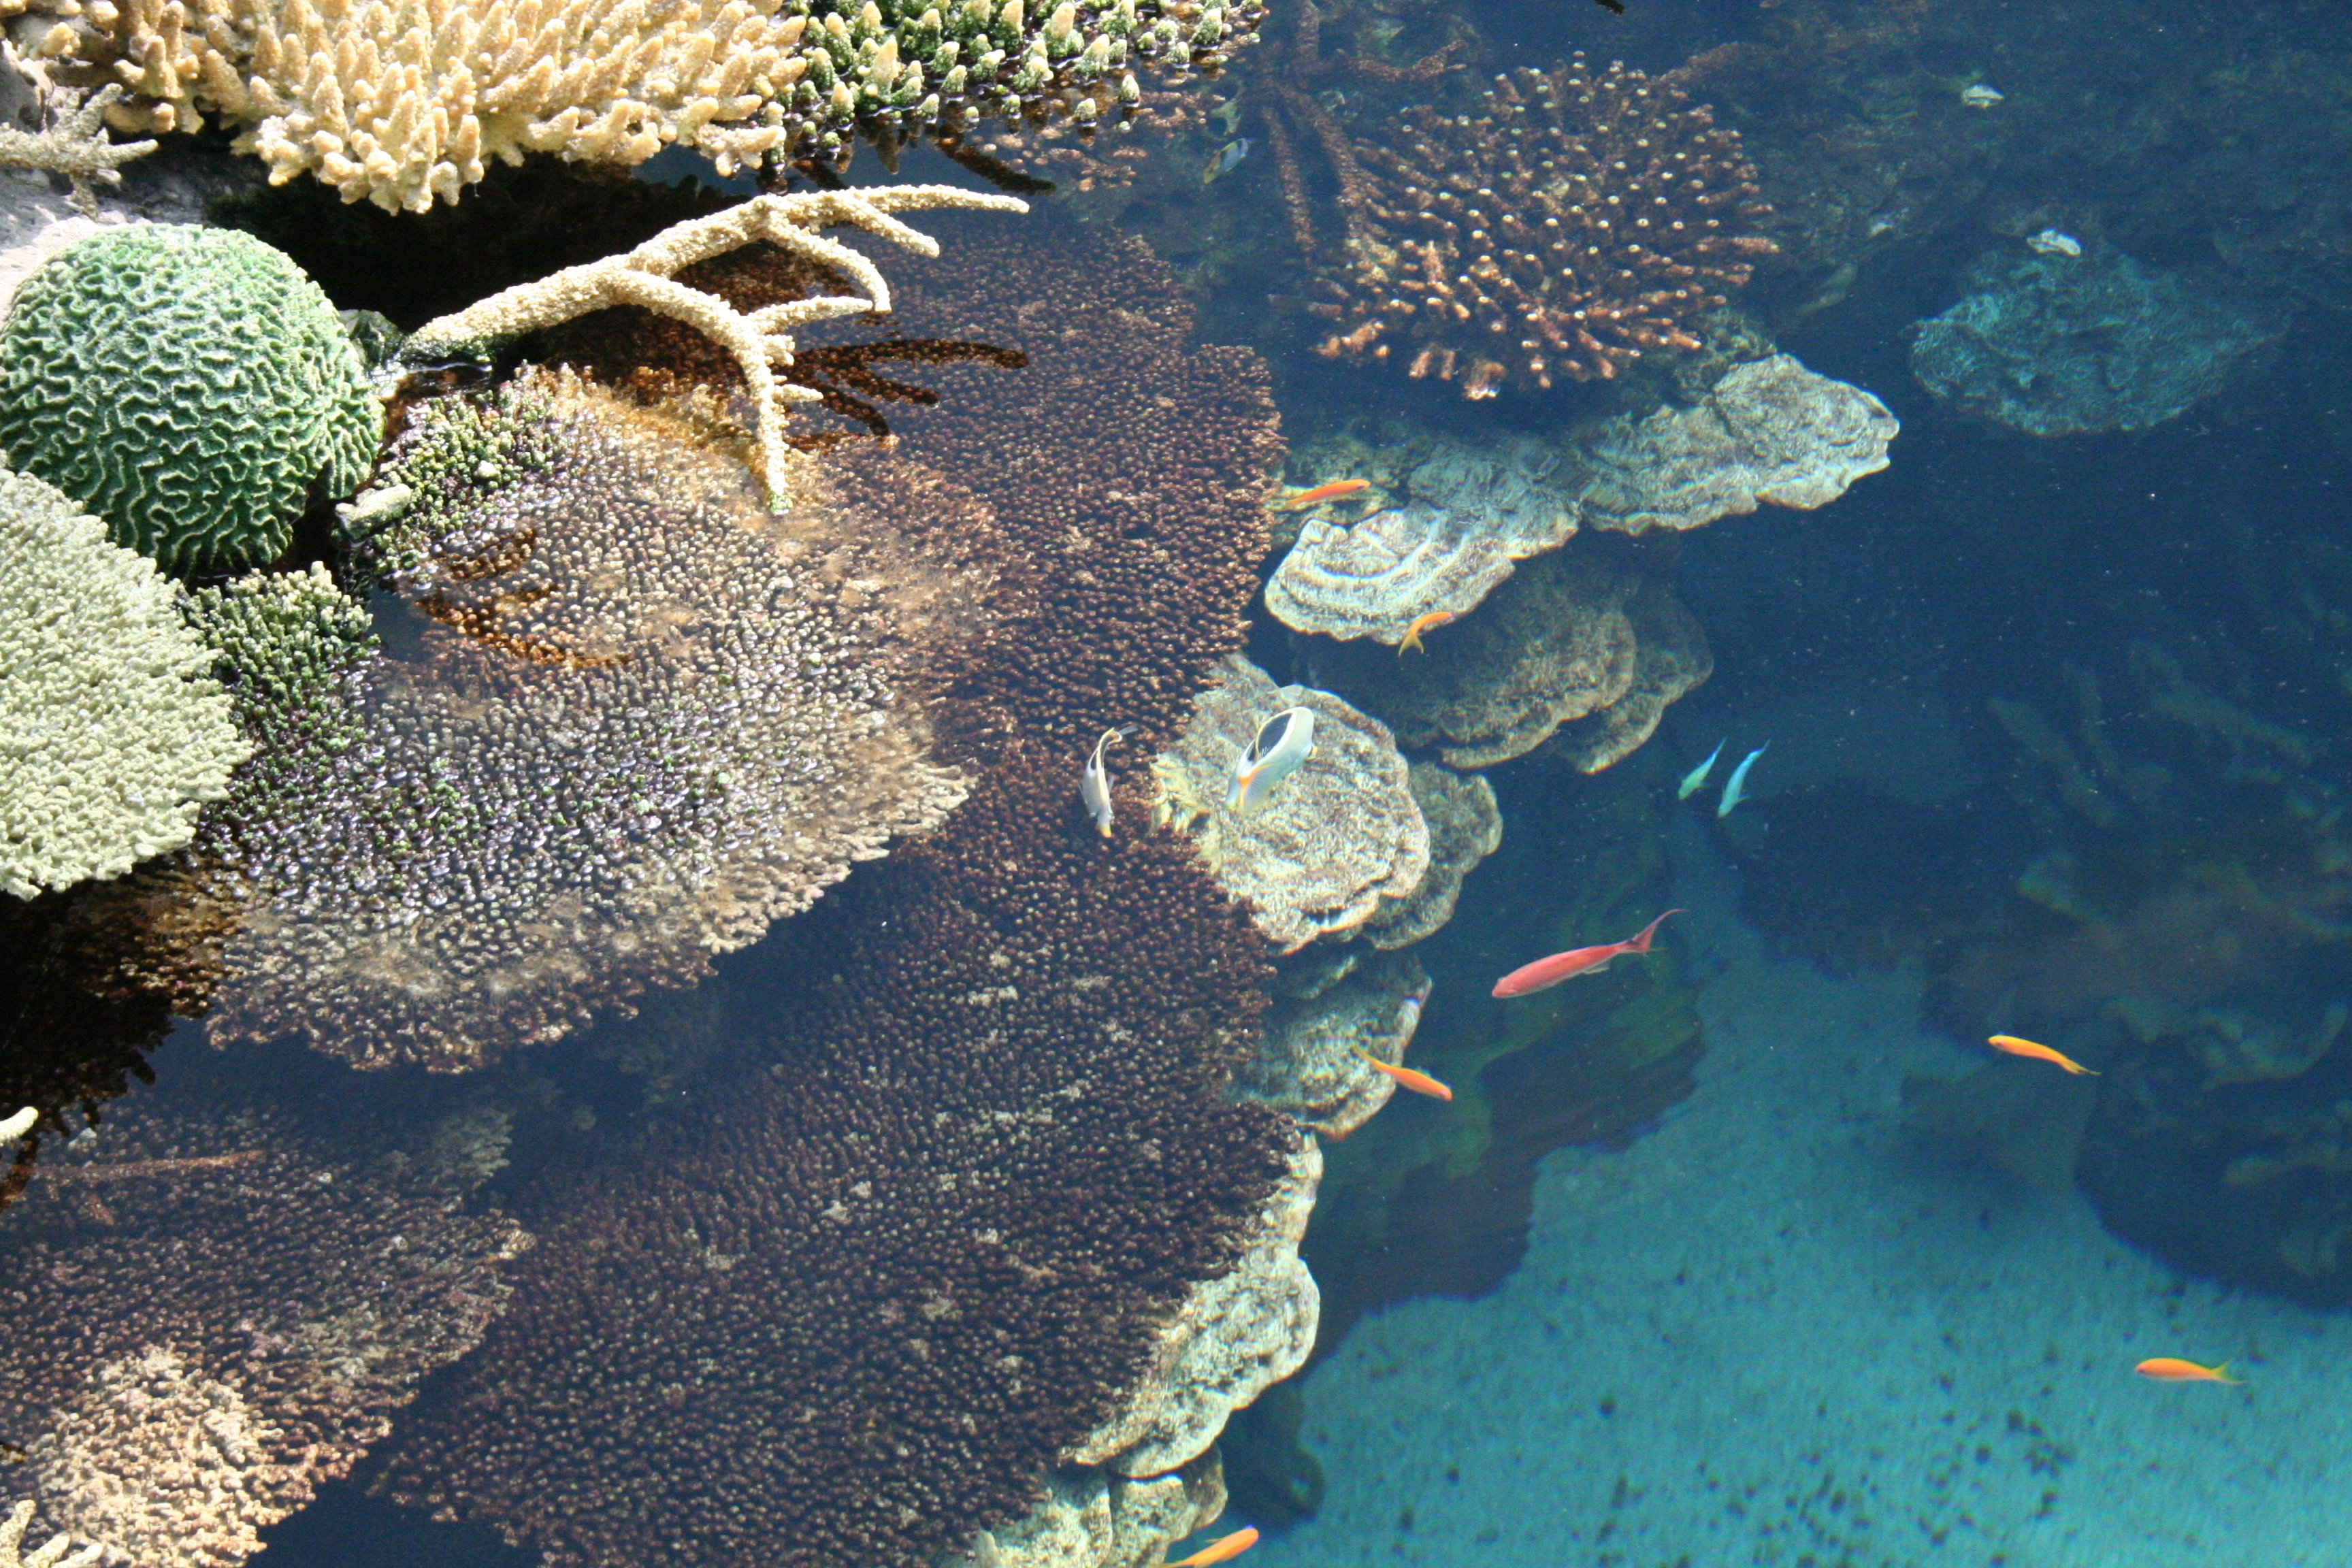     La canicule marine : un risque de mortalité pour nos coraux

